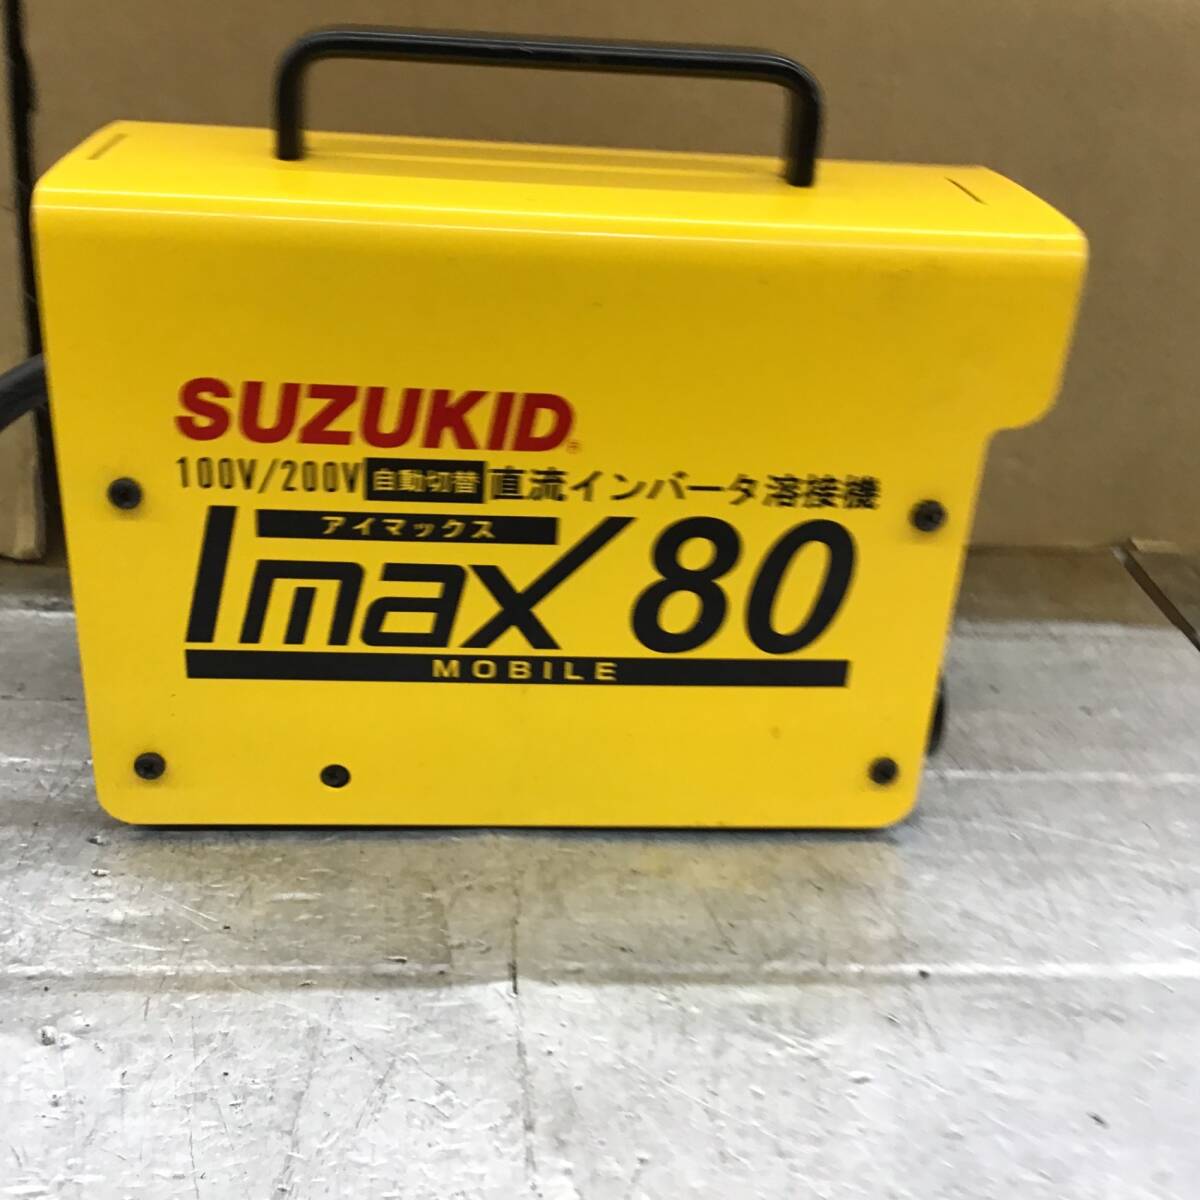 【中古品】○スズキッド(SUZUKID) 直流アーク溶接機 IMAX80 SIM-80 (Imax80)_画像2